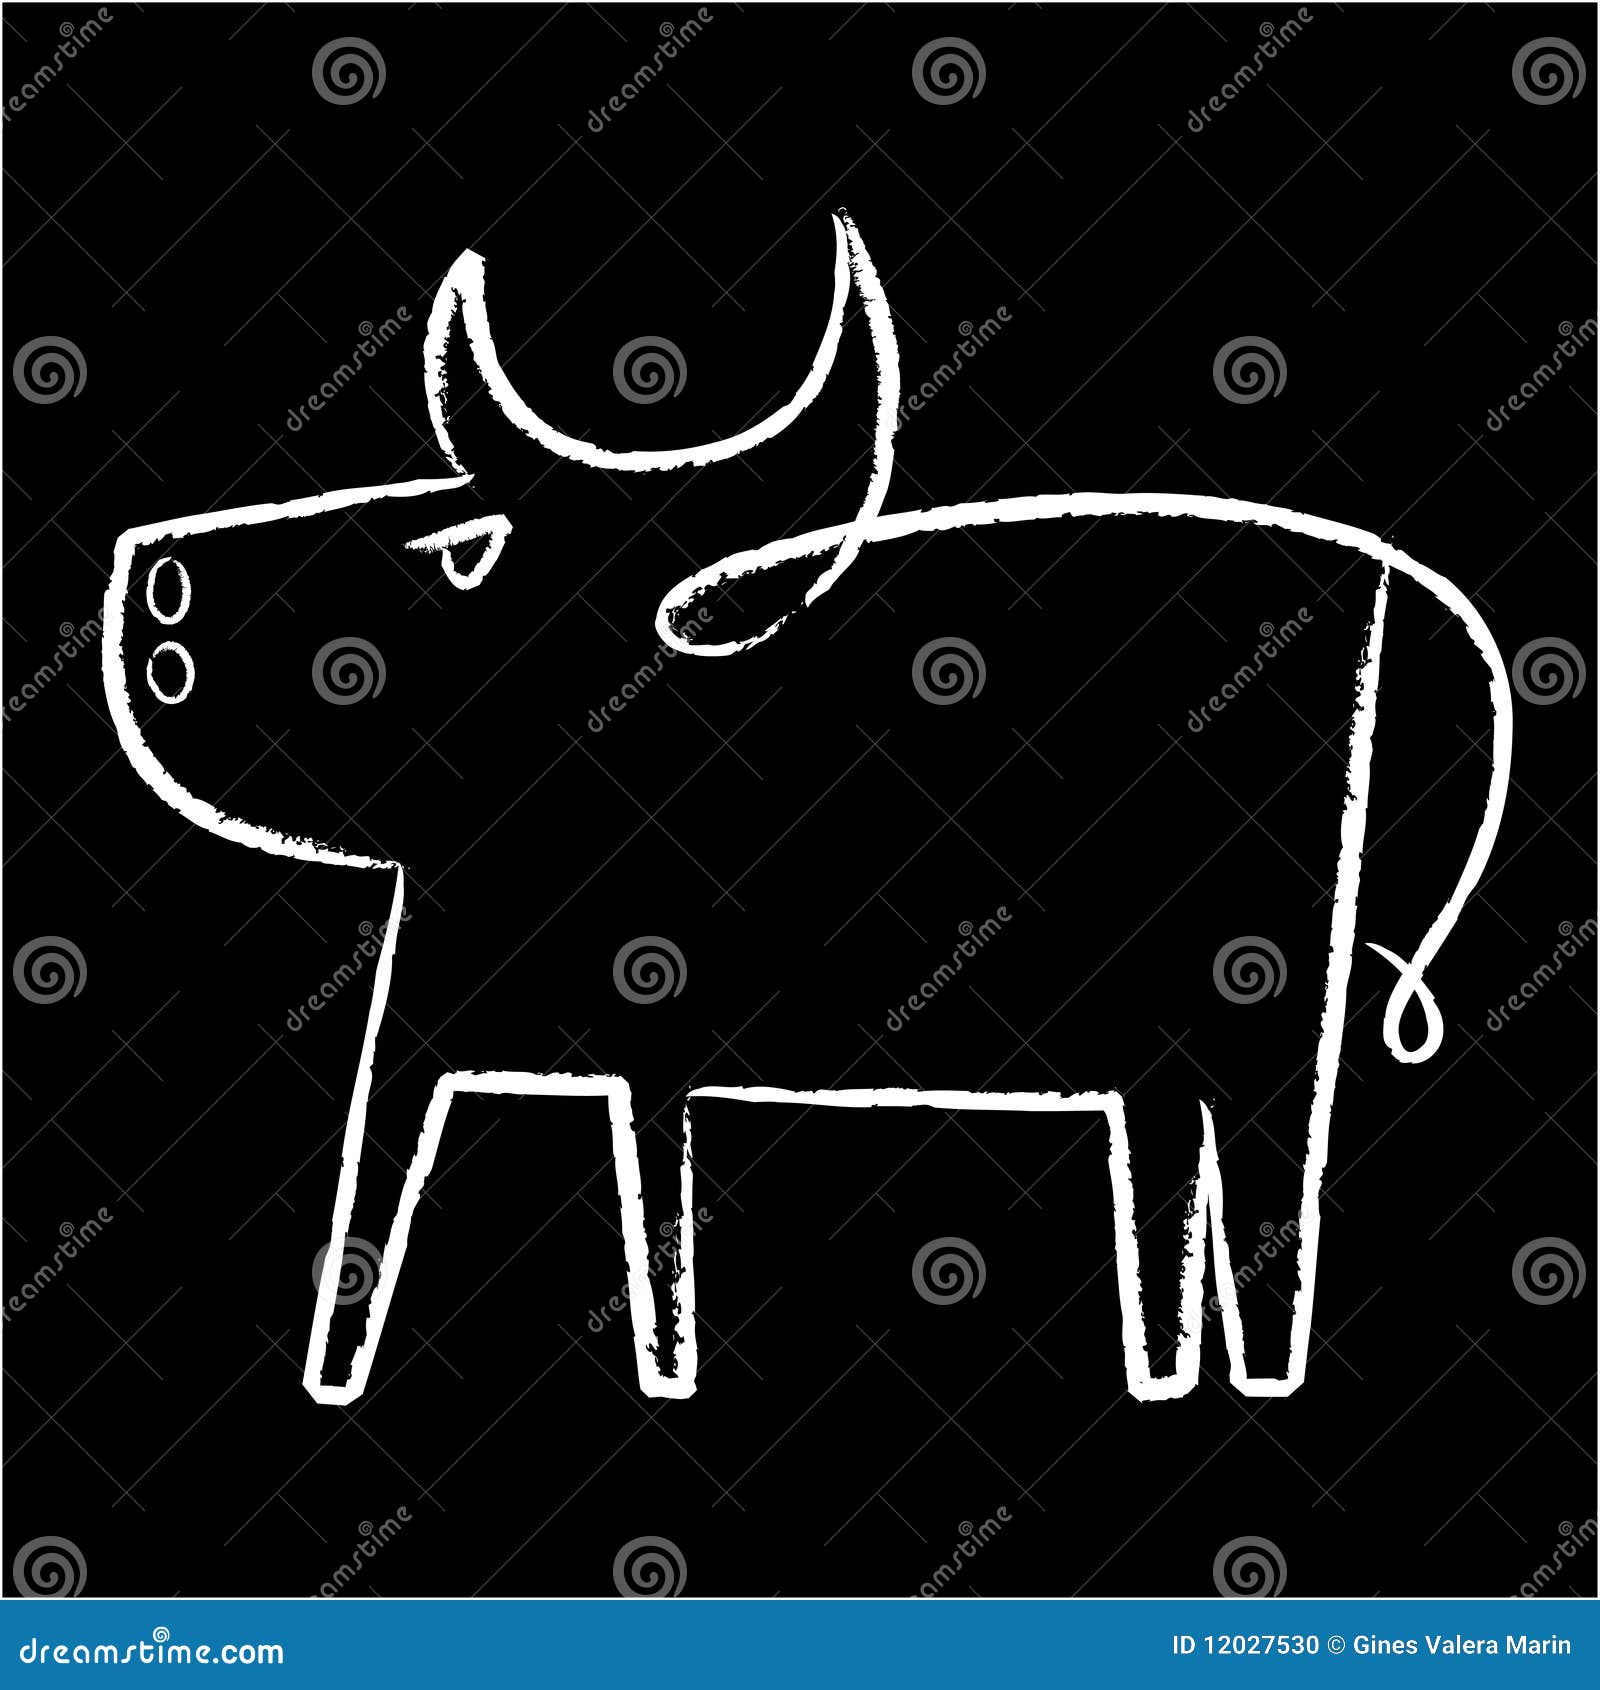 Icona del toro. Illustrazione di vettore dell'icona semplice del toro.

Soltanto due colori globali. CMYK. Cambiamenti facili di colore.